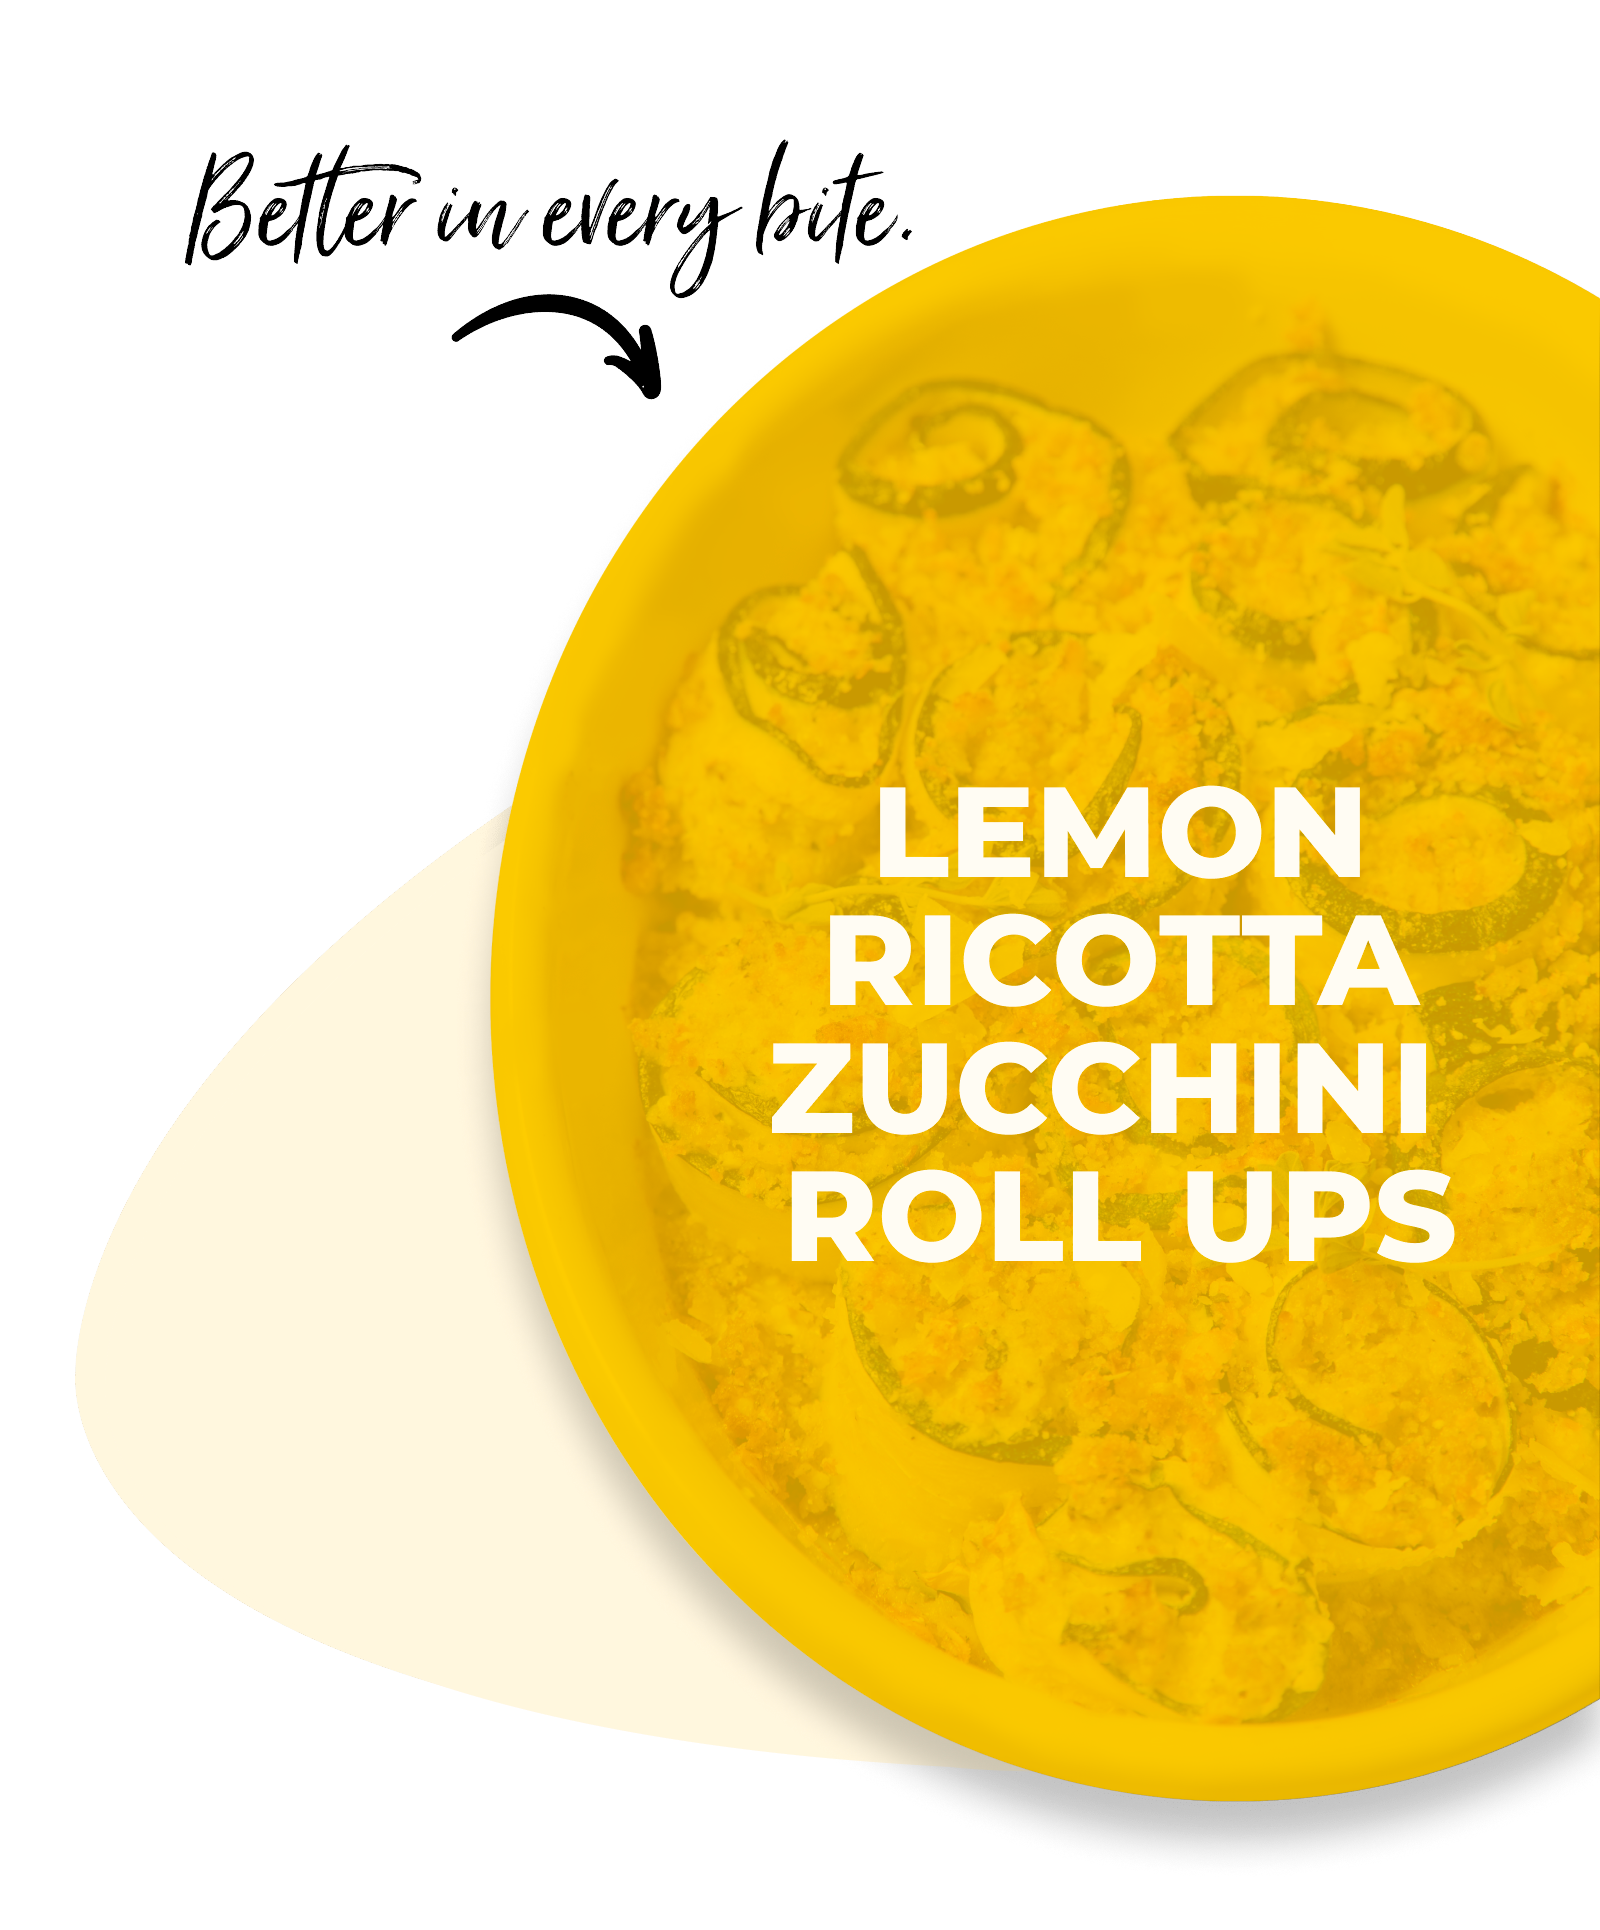 Lemon ricotta zucchini roll ups hover state